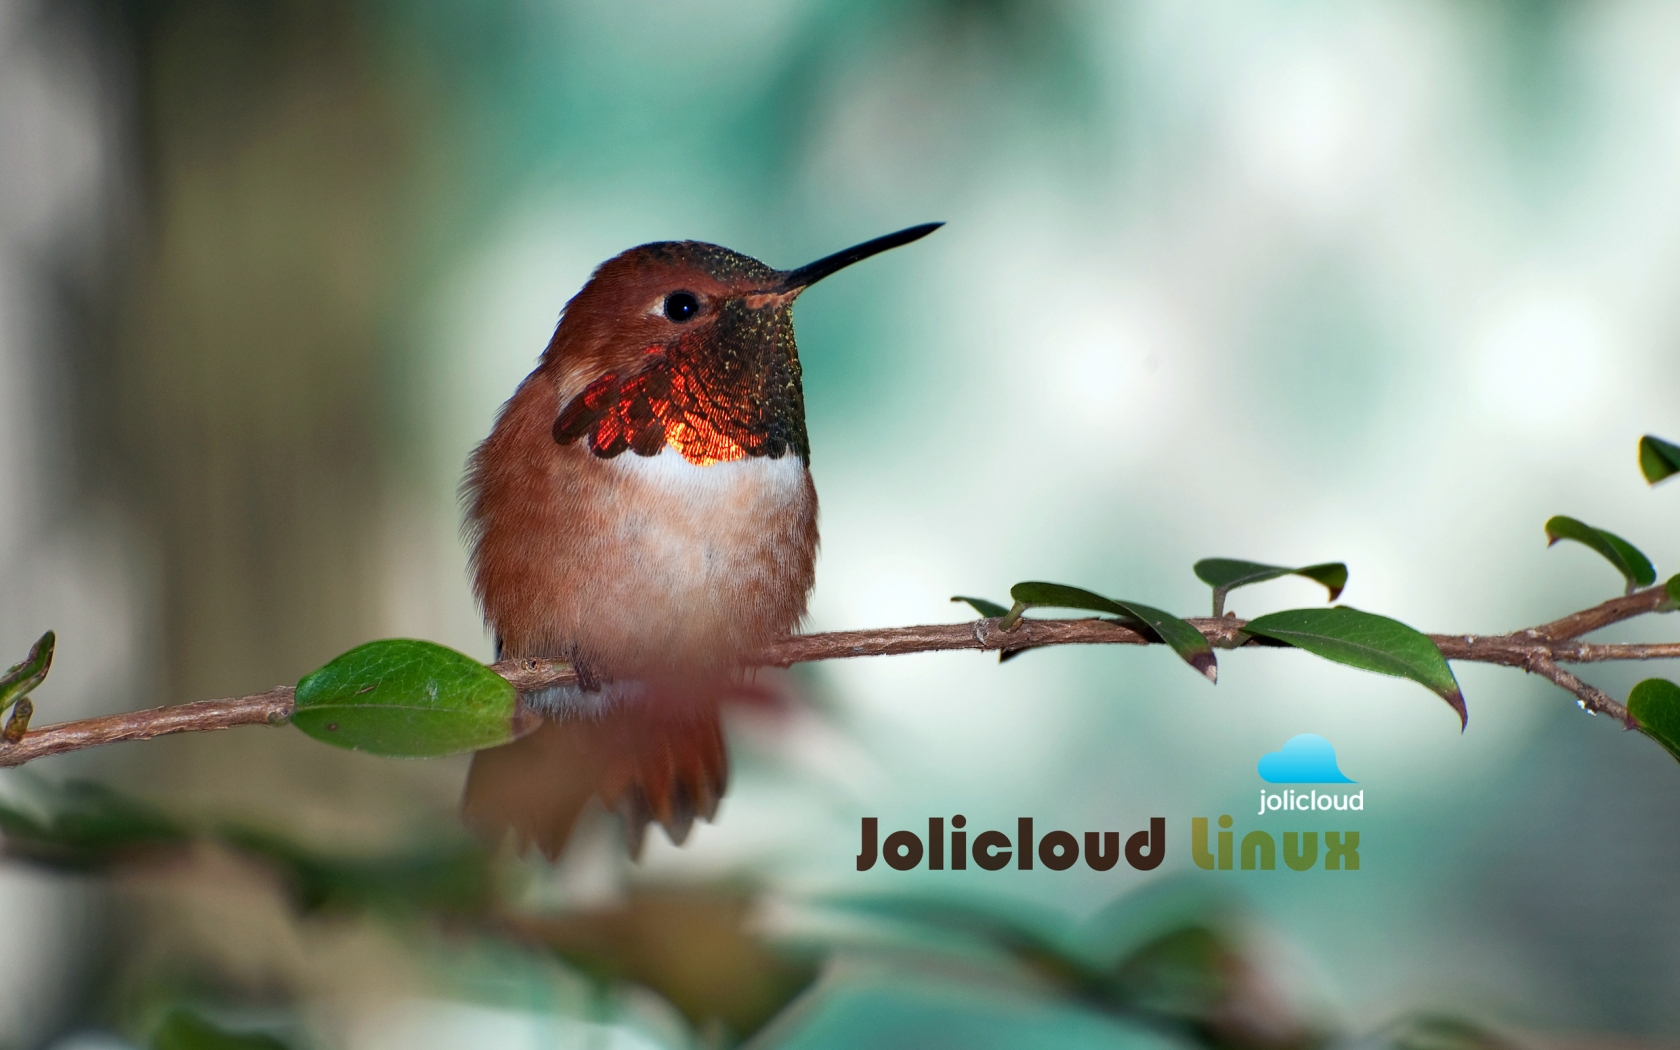 Jolicloud Linux Hummingbird for 1680 x 1050 widescreen resolution